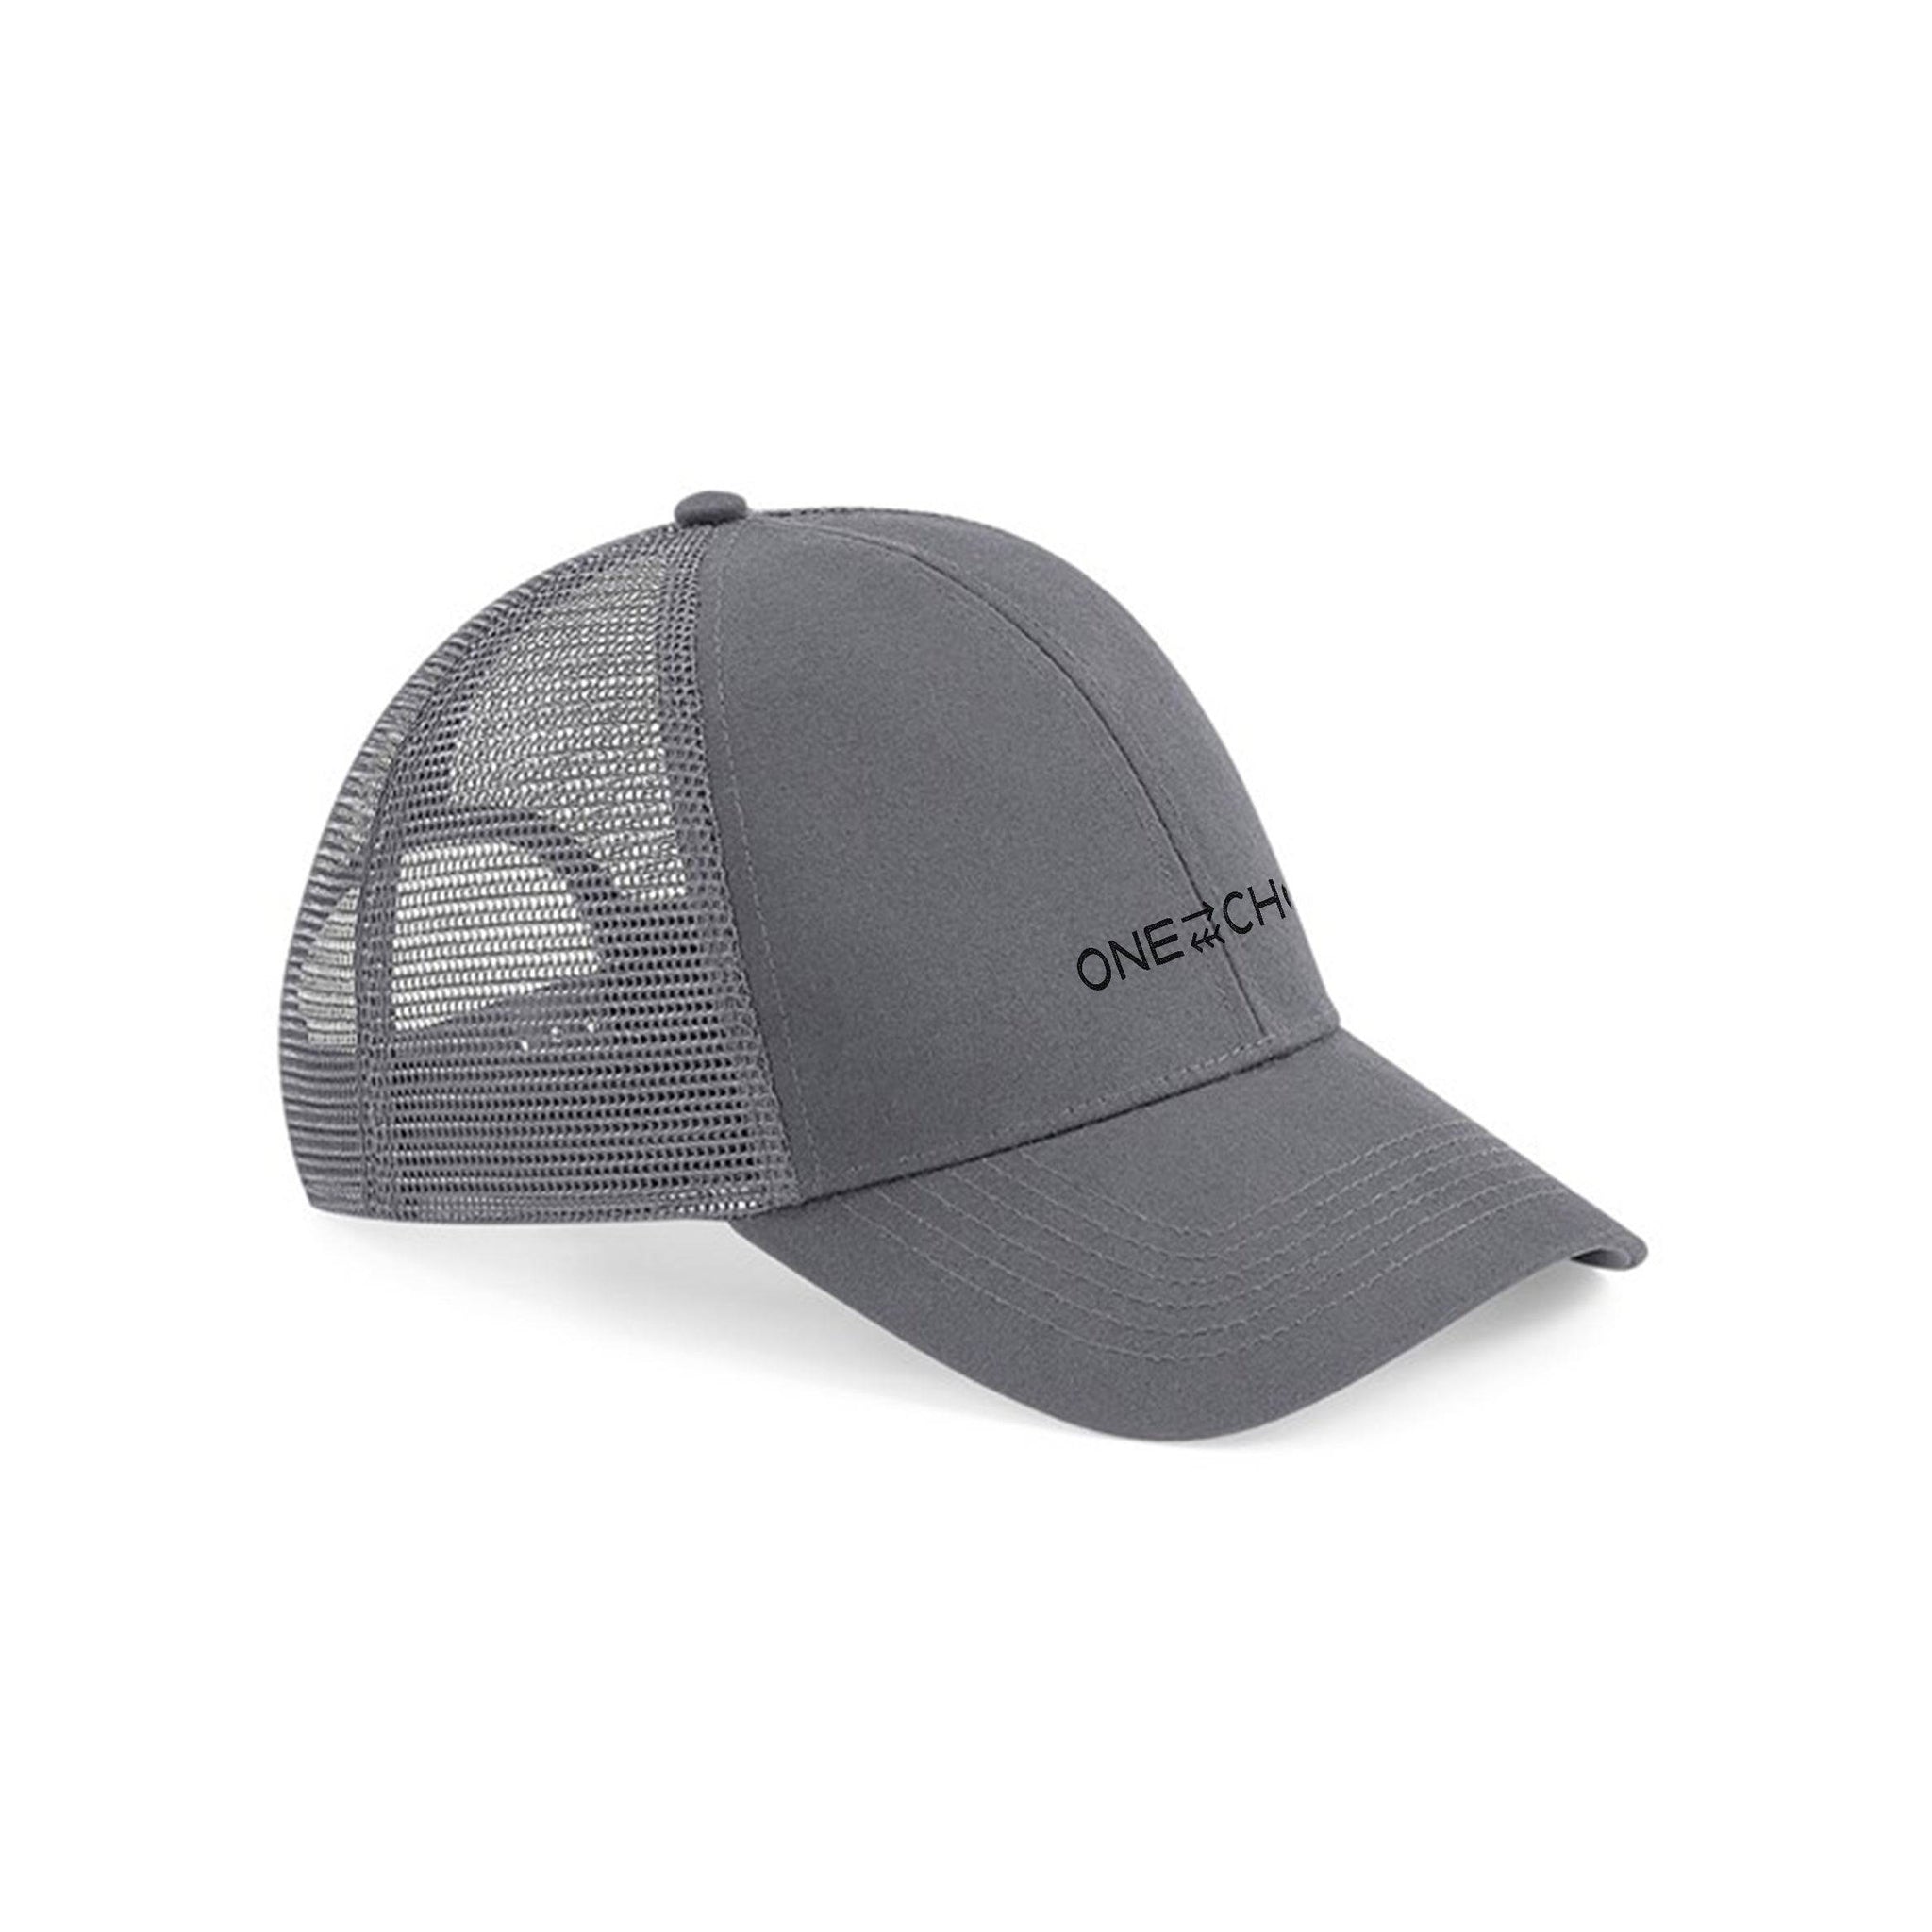 Organic Trucker Hat - Grey - One Choice Apparel